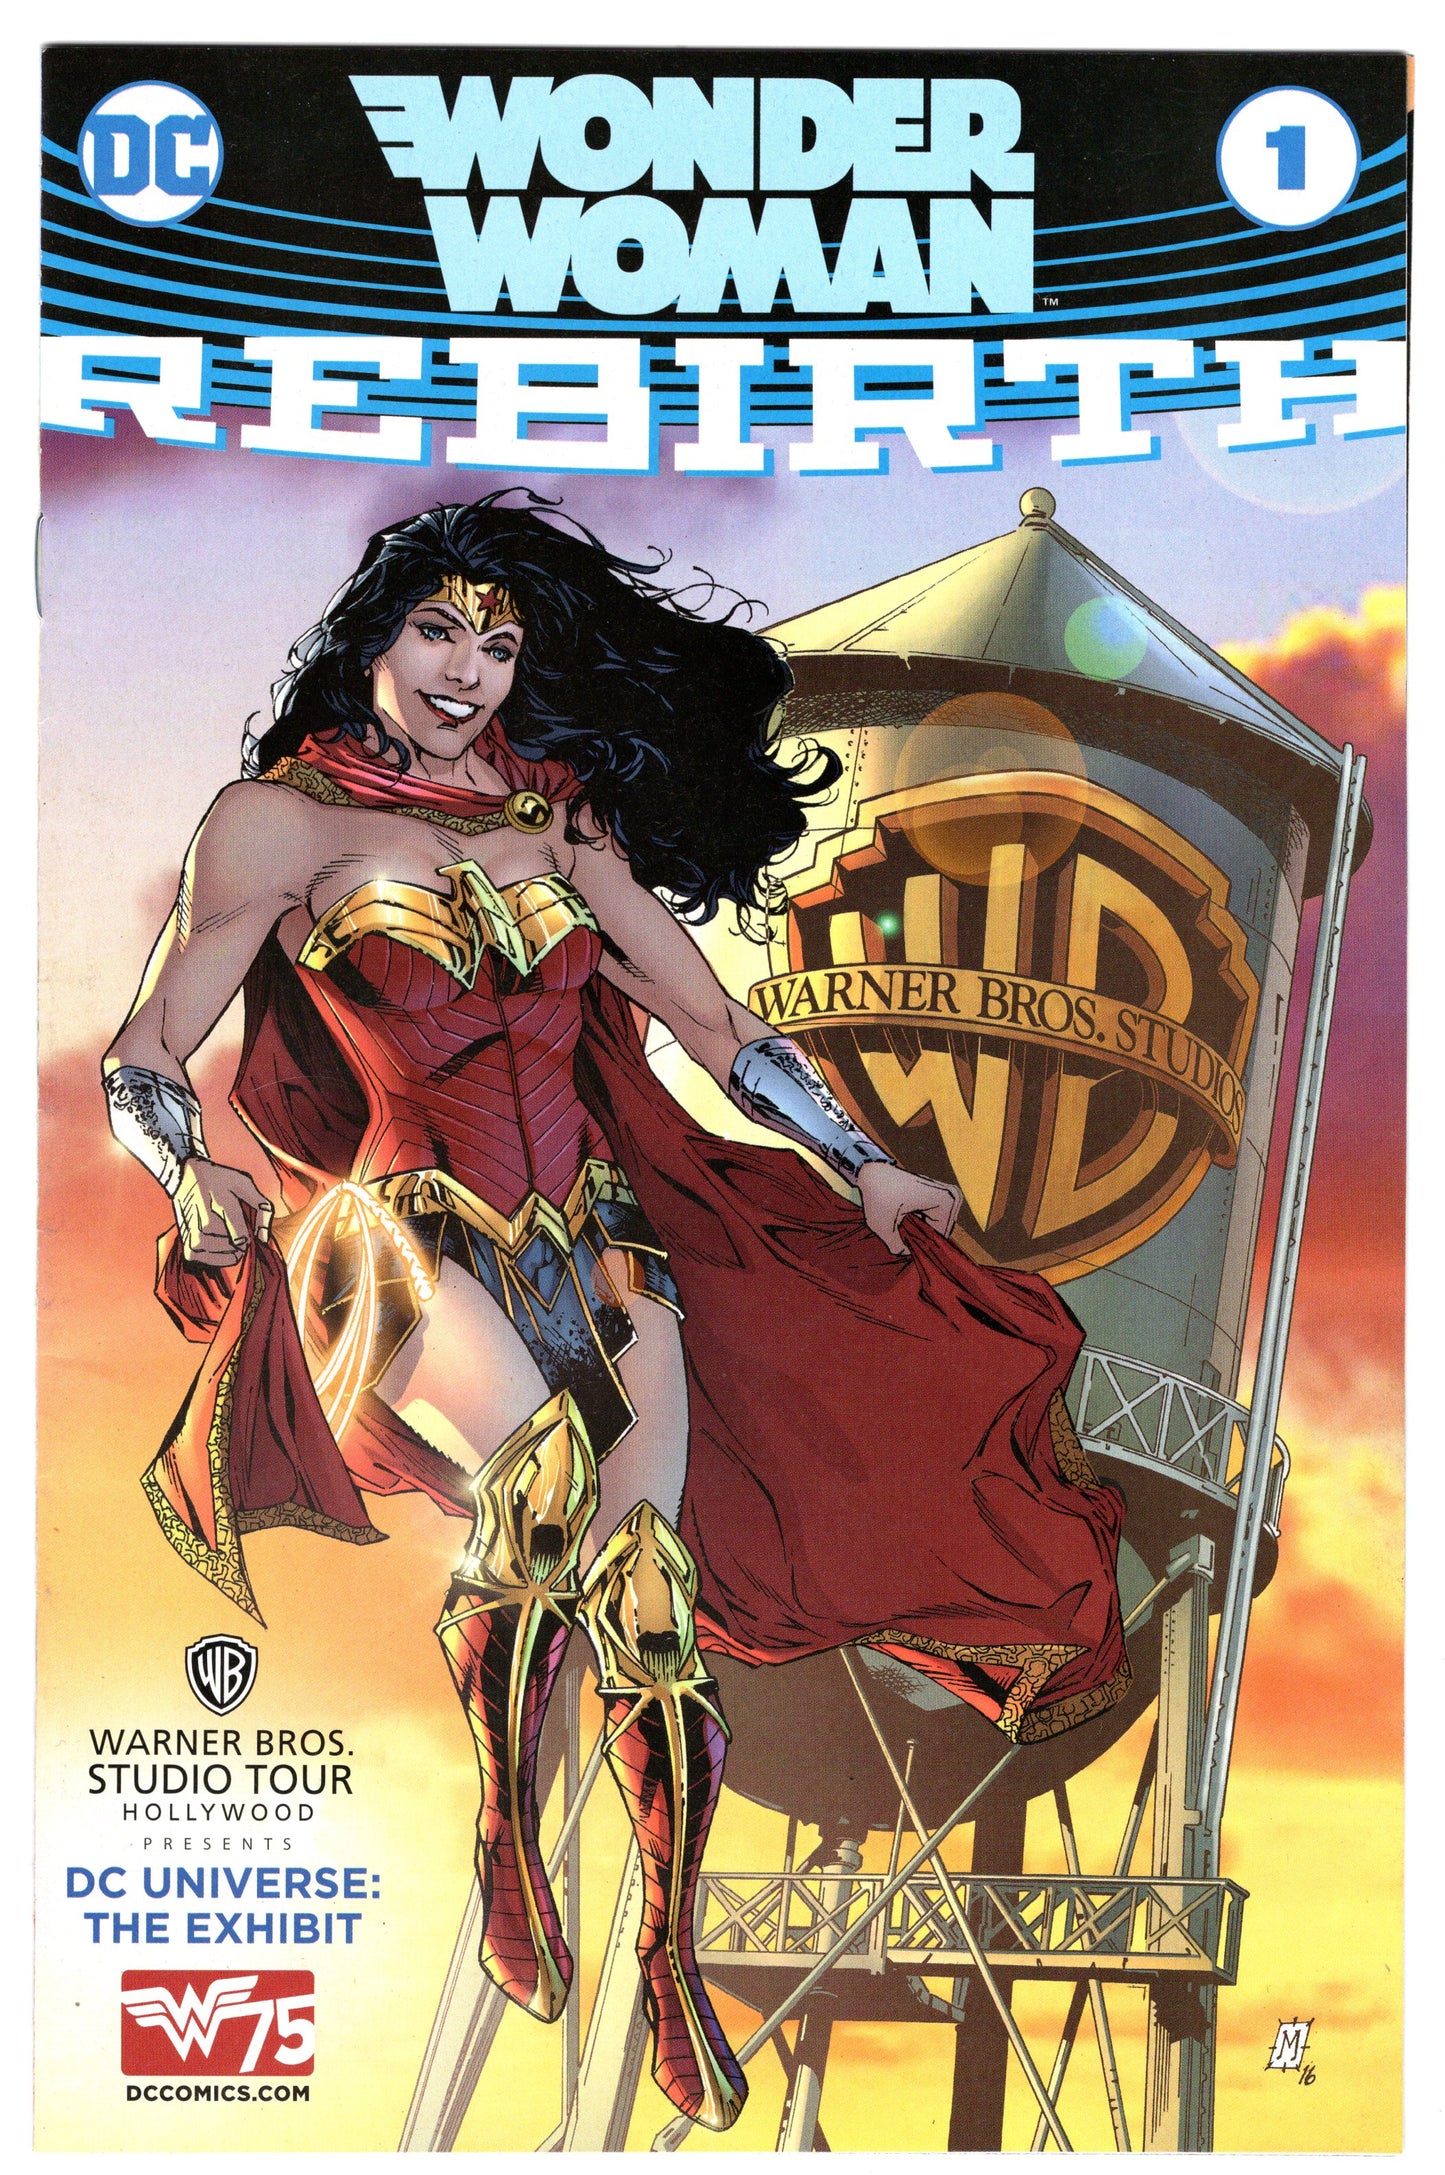 Wonder Woman #1 Rebirth "Warner Bros Studio Tour Variant" (2011 - DC Comics) NM